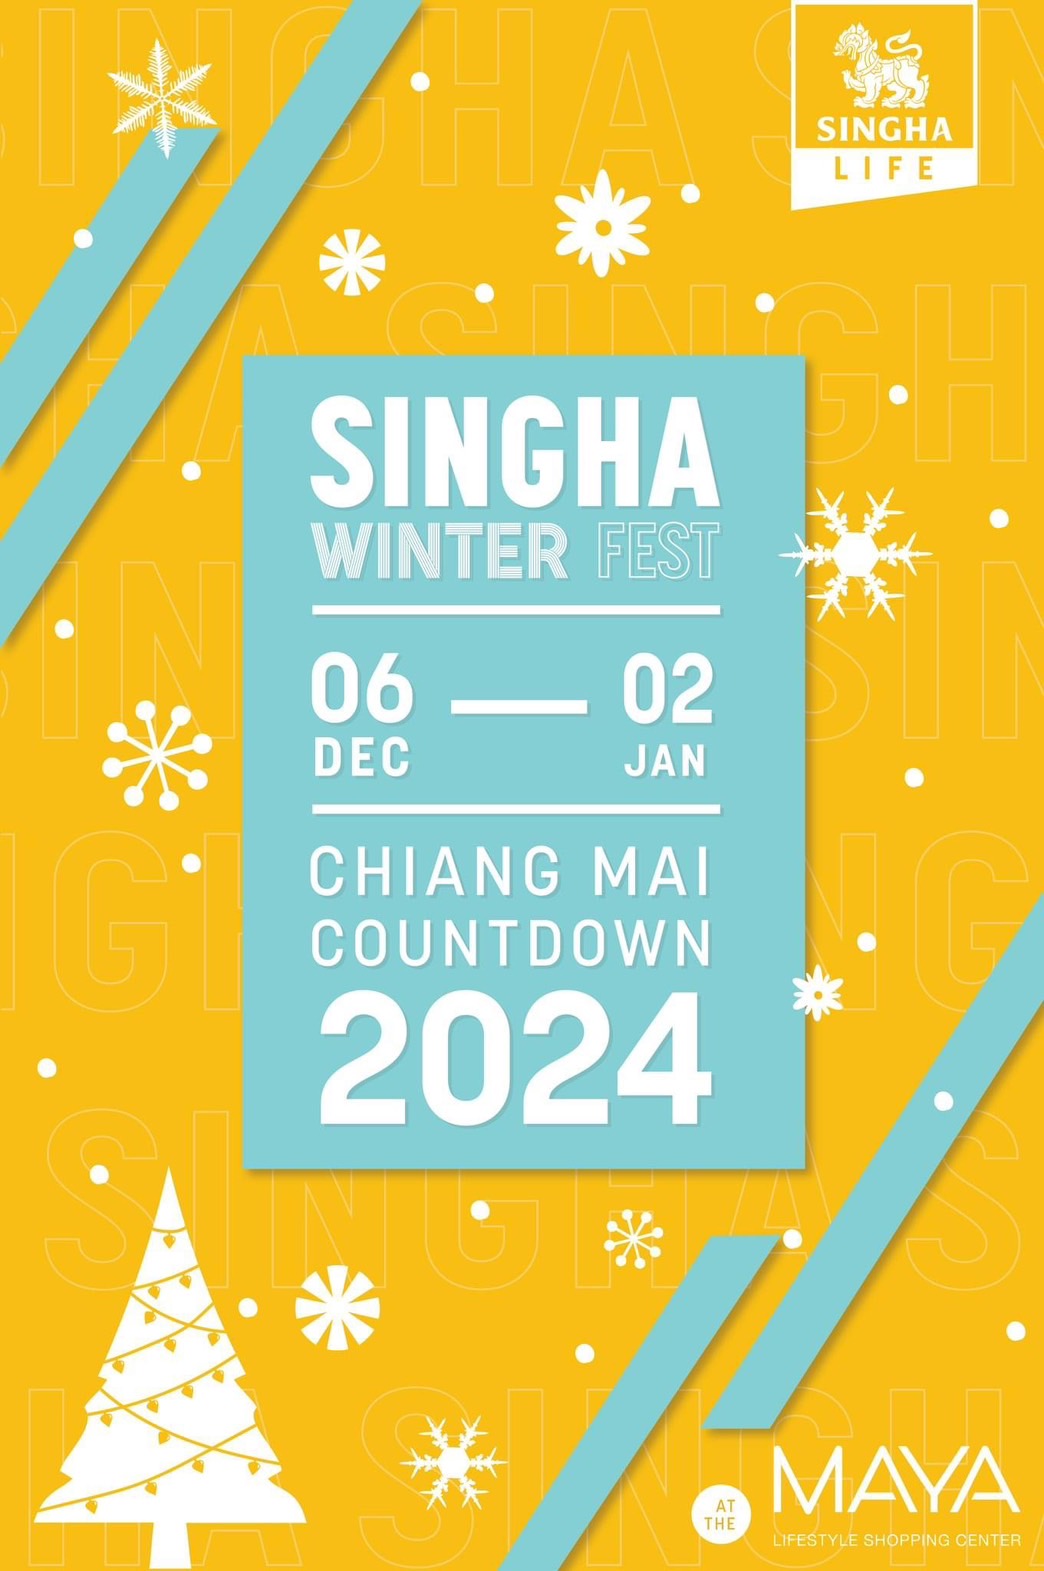 เตรียมมานับถอยหลังเคาท์ดาวน์ไปด้วยกัน ‘SINGHA WINTER FEST CHIANGMAI COUNTDOWN 2024’ ที่เมญ่า เชียงใหม่ 